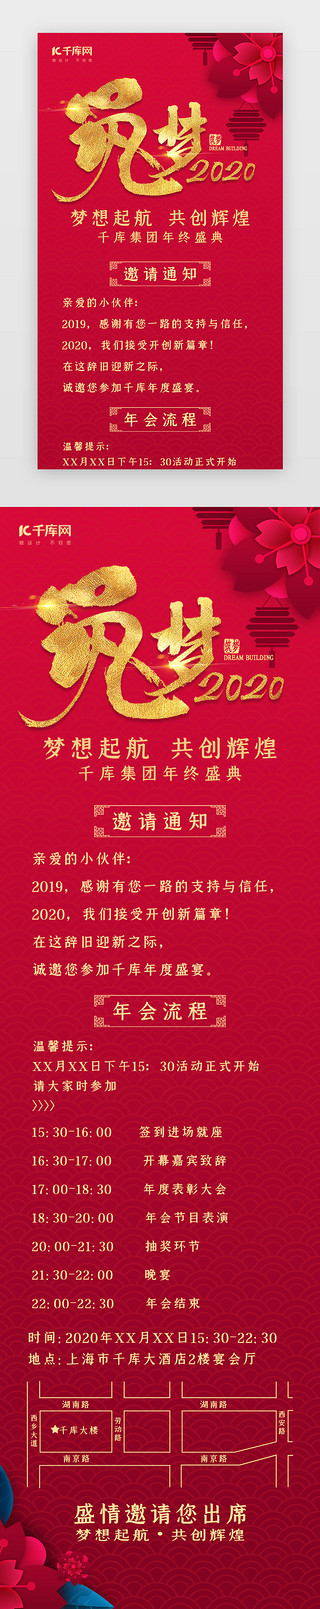 公司风UI设计素材_中国风筑梦2020公司年会活动h5长图